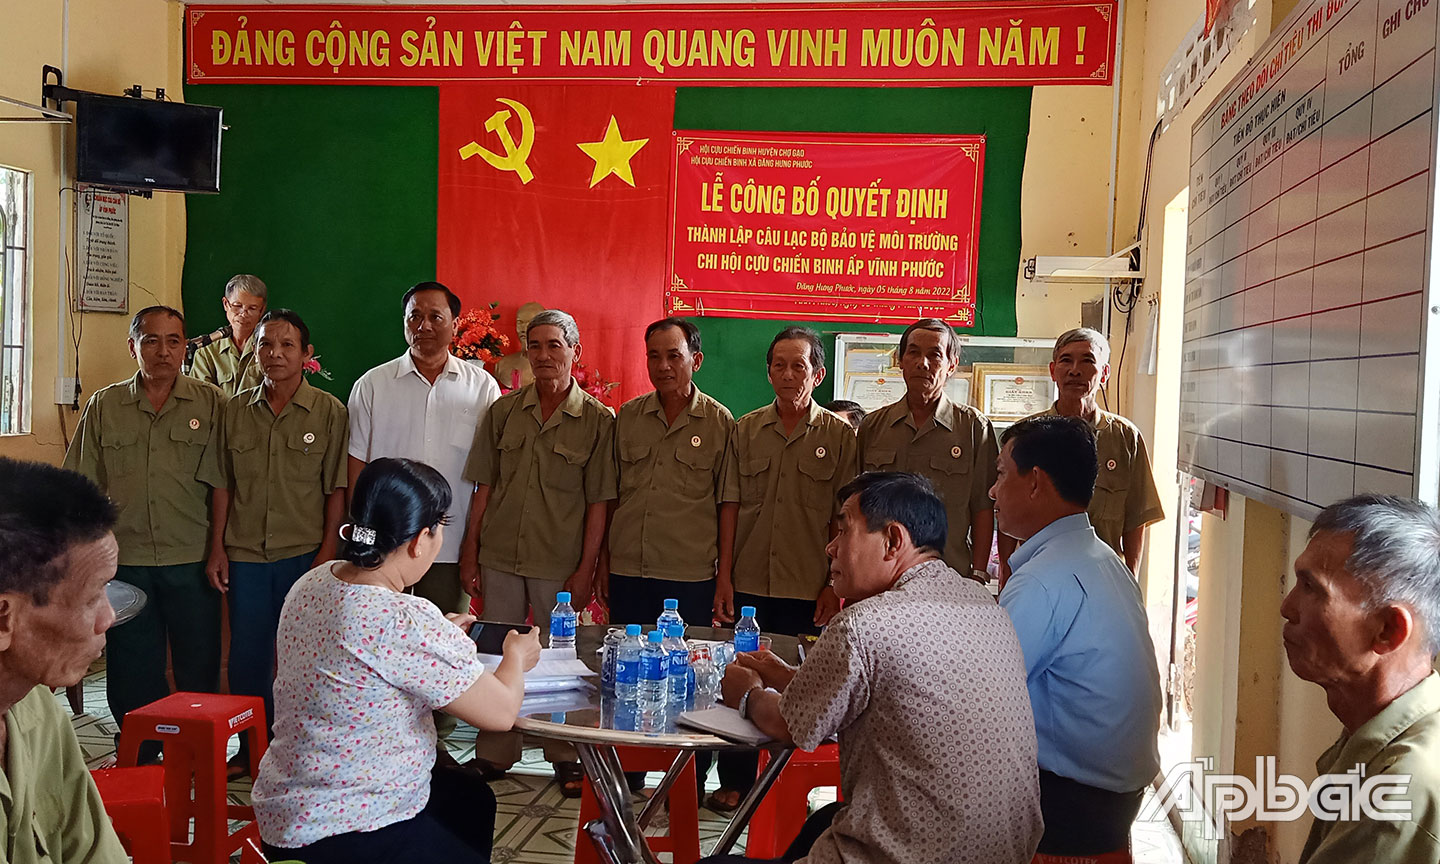 Ra mắt CLB bảo vệ môi trường Chi hội CCB ấp Vĩnh Phước, xã Đăng Hưng Phước.